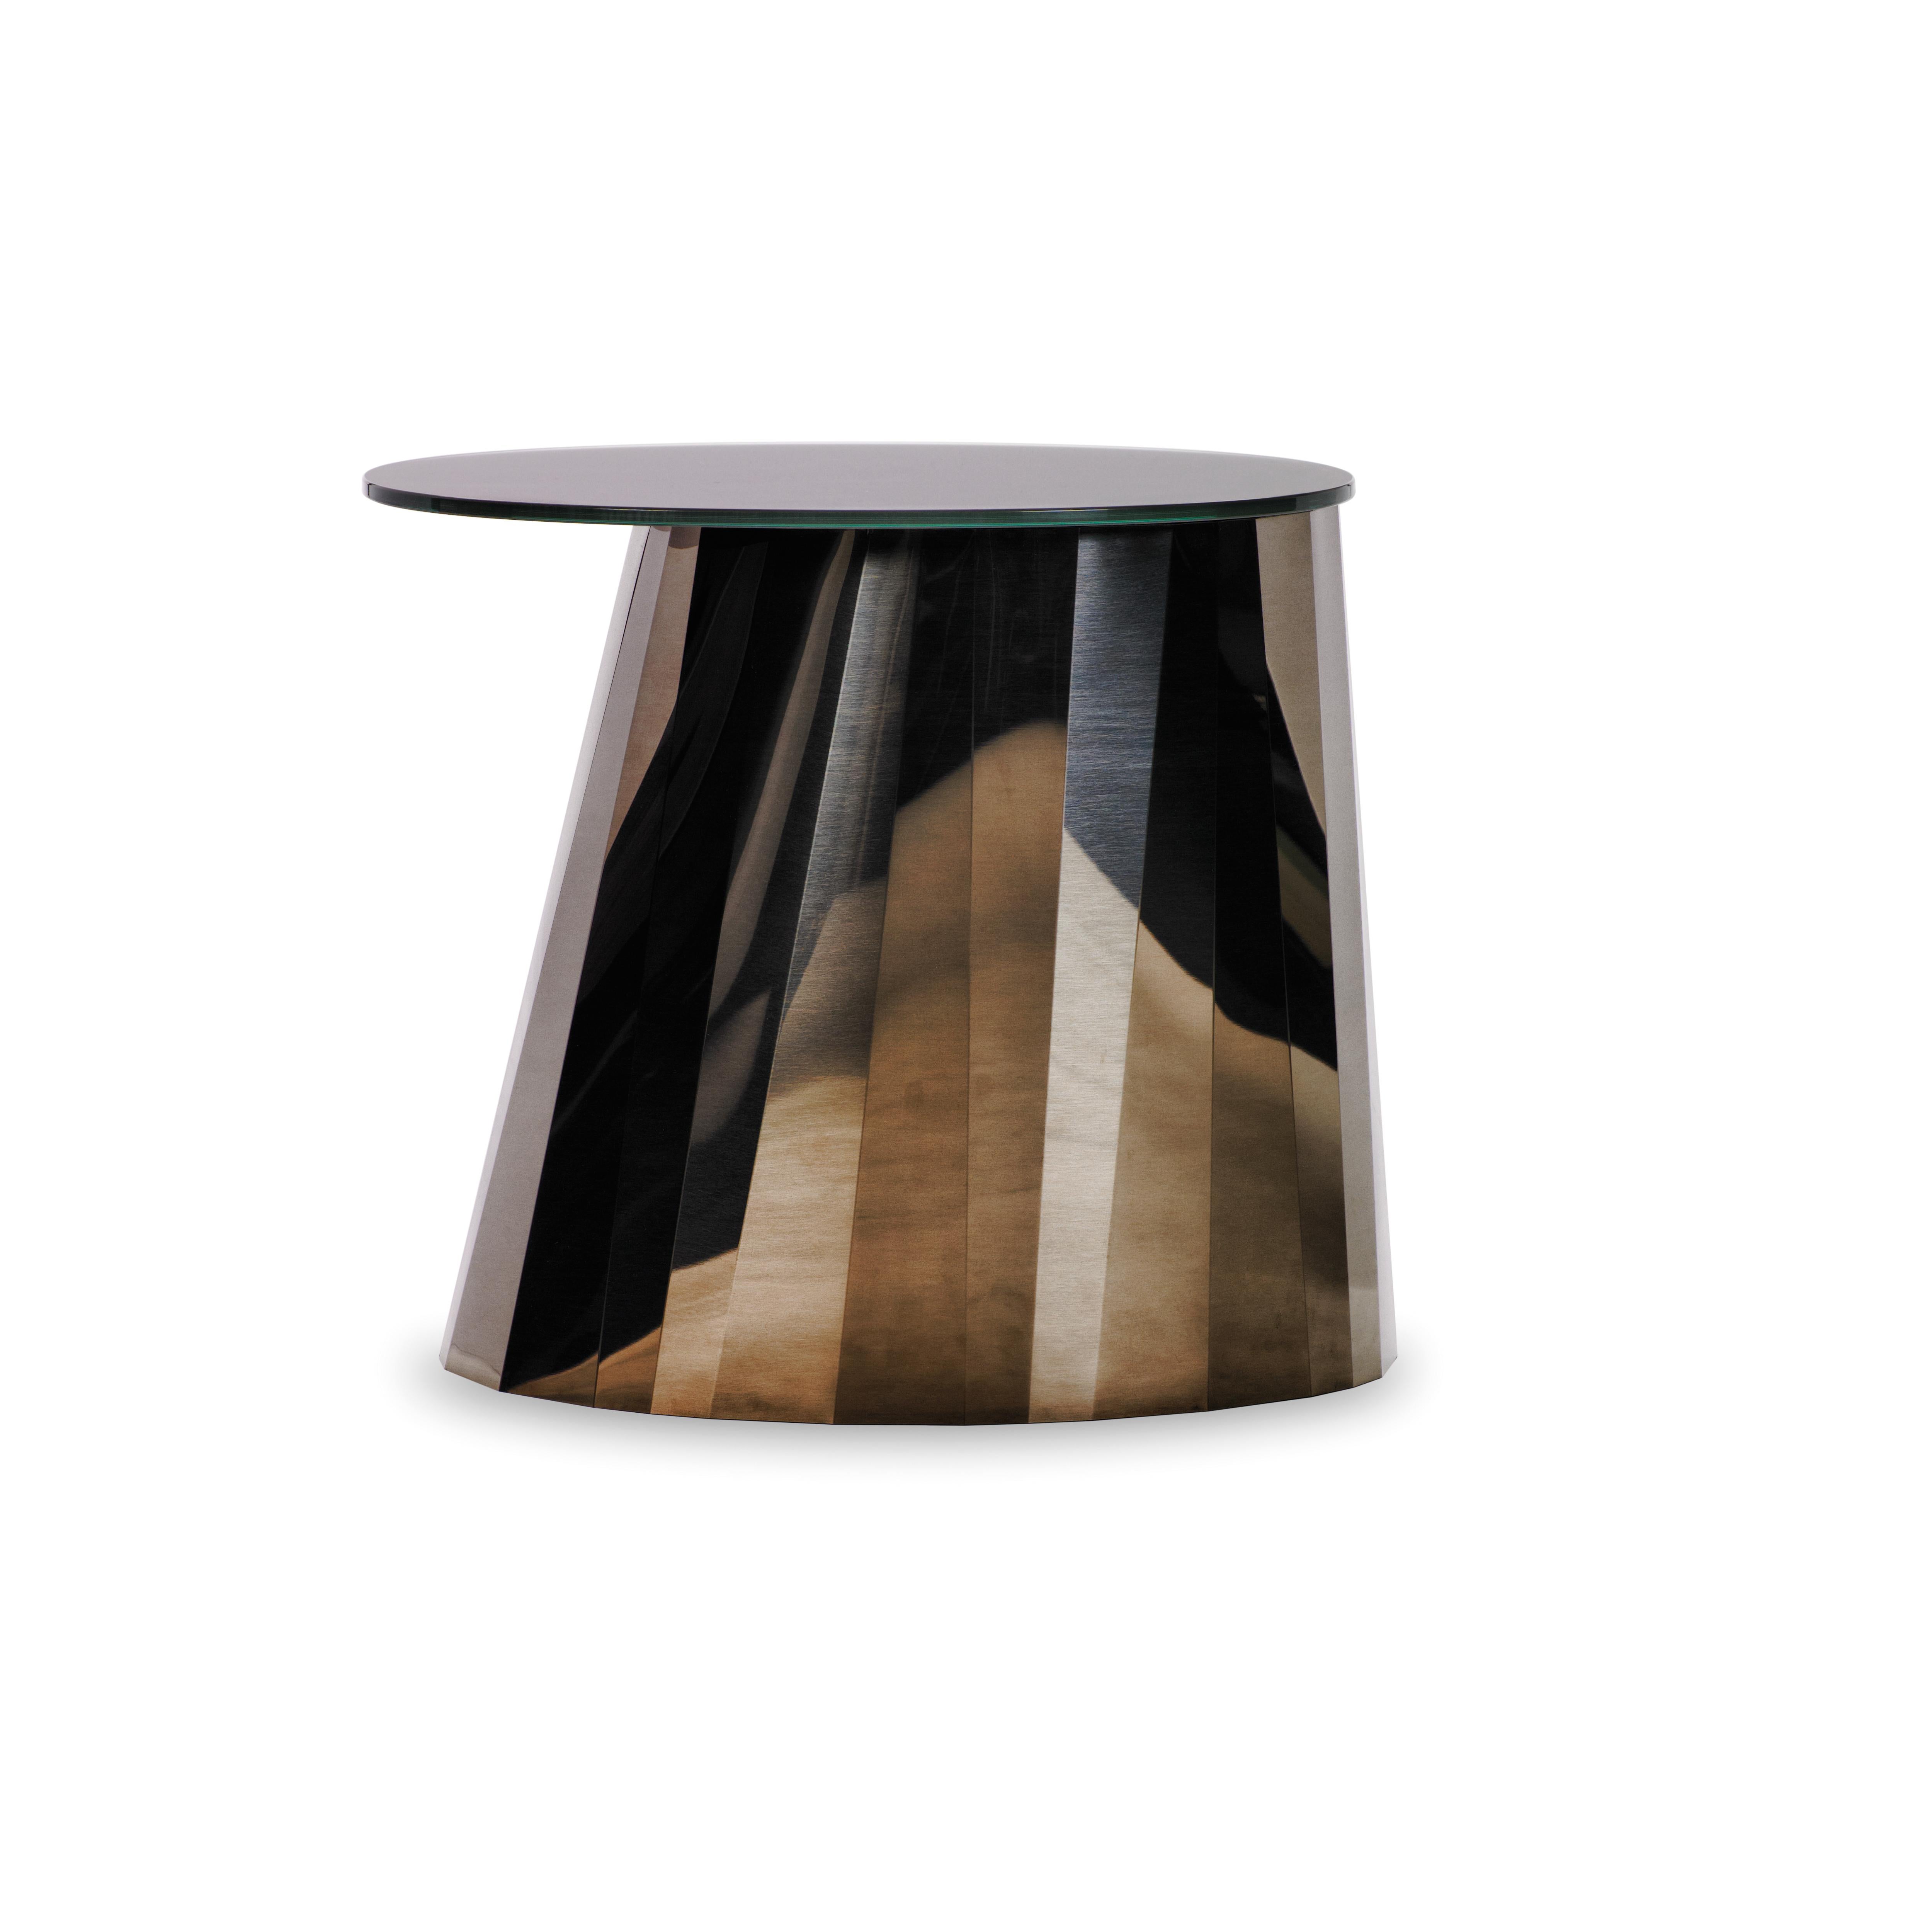 Avec la série de tables d'appoint Pli, la designer française Victoria Wilmotte apporte aux espaces de vie des objets d'une élégance cristalline inhabituelle et d'une géométrie étonnante. Les courbes et les plis qui ont donné son nom à Pli font